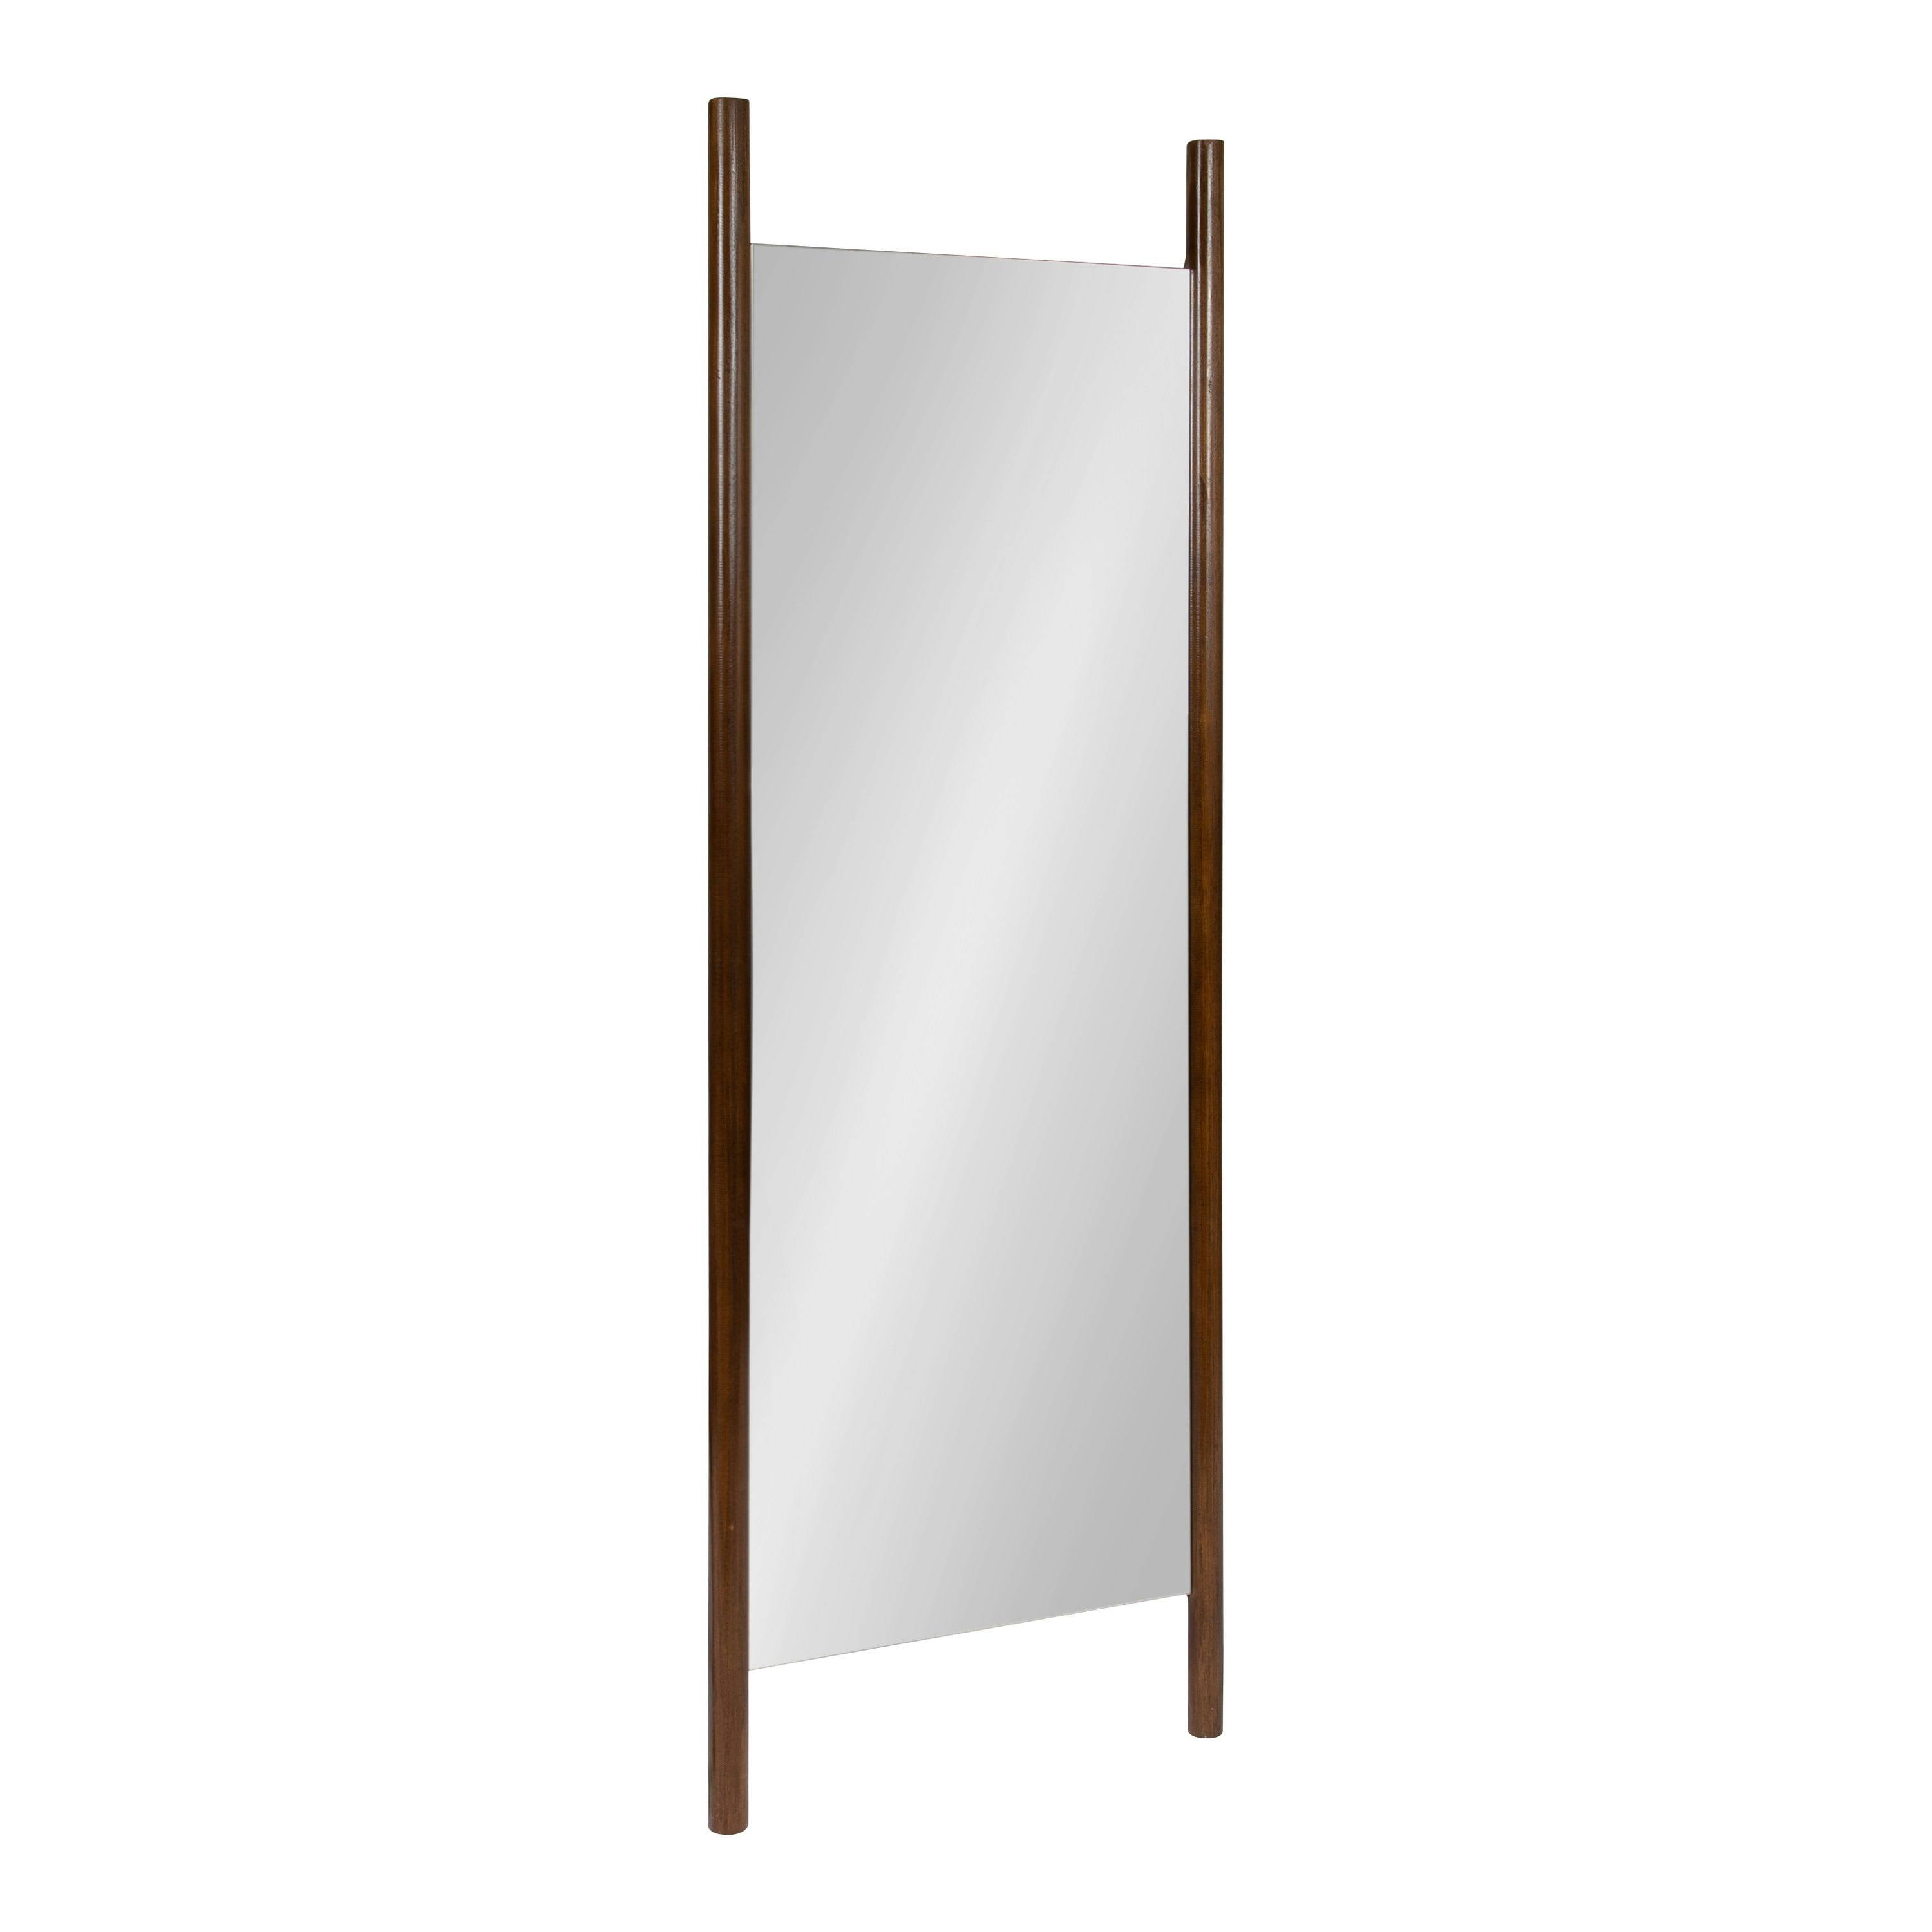 Parkman 21"x67" Walnut Brown Wood Wall Leaner Mirror